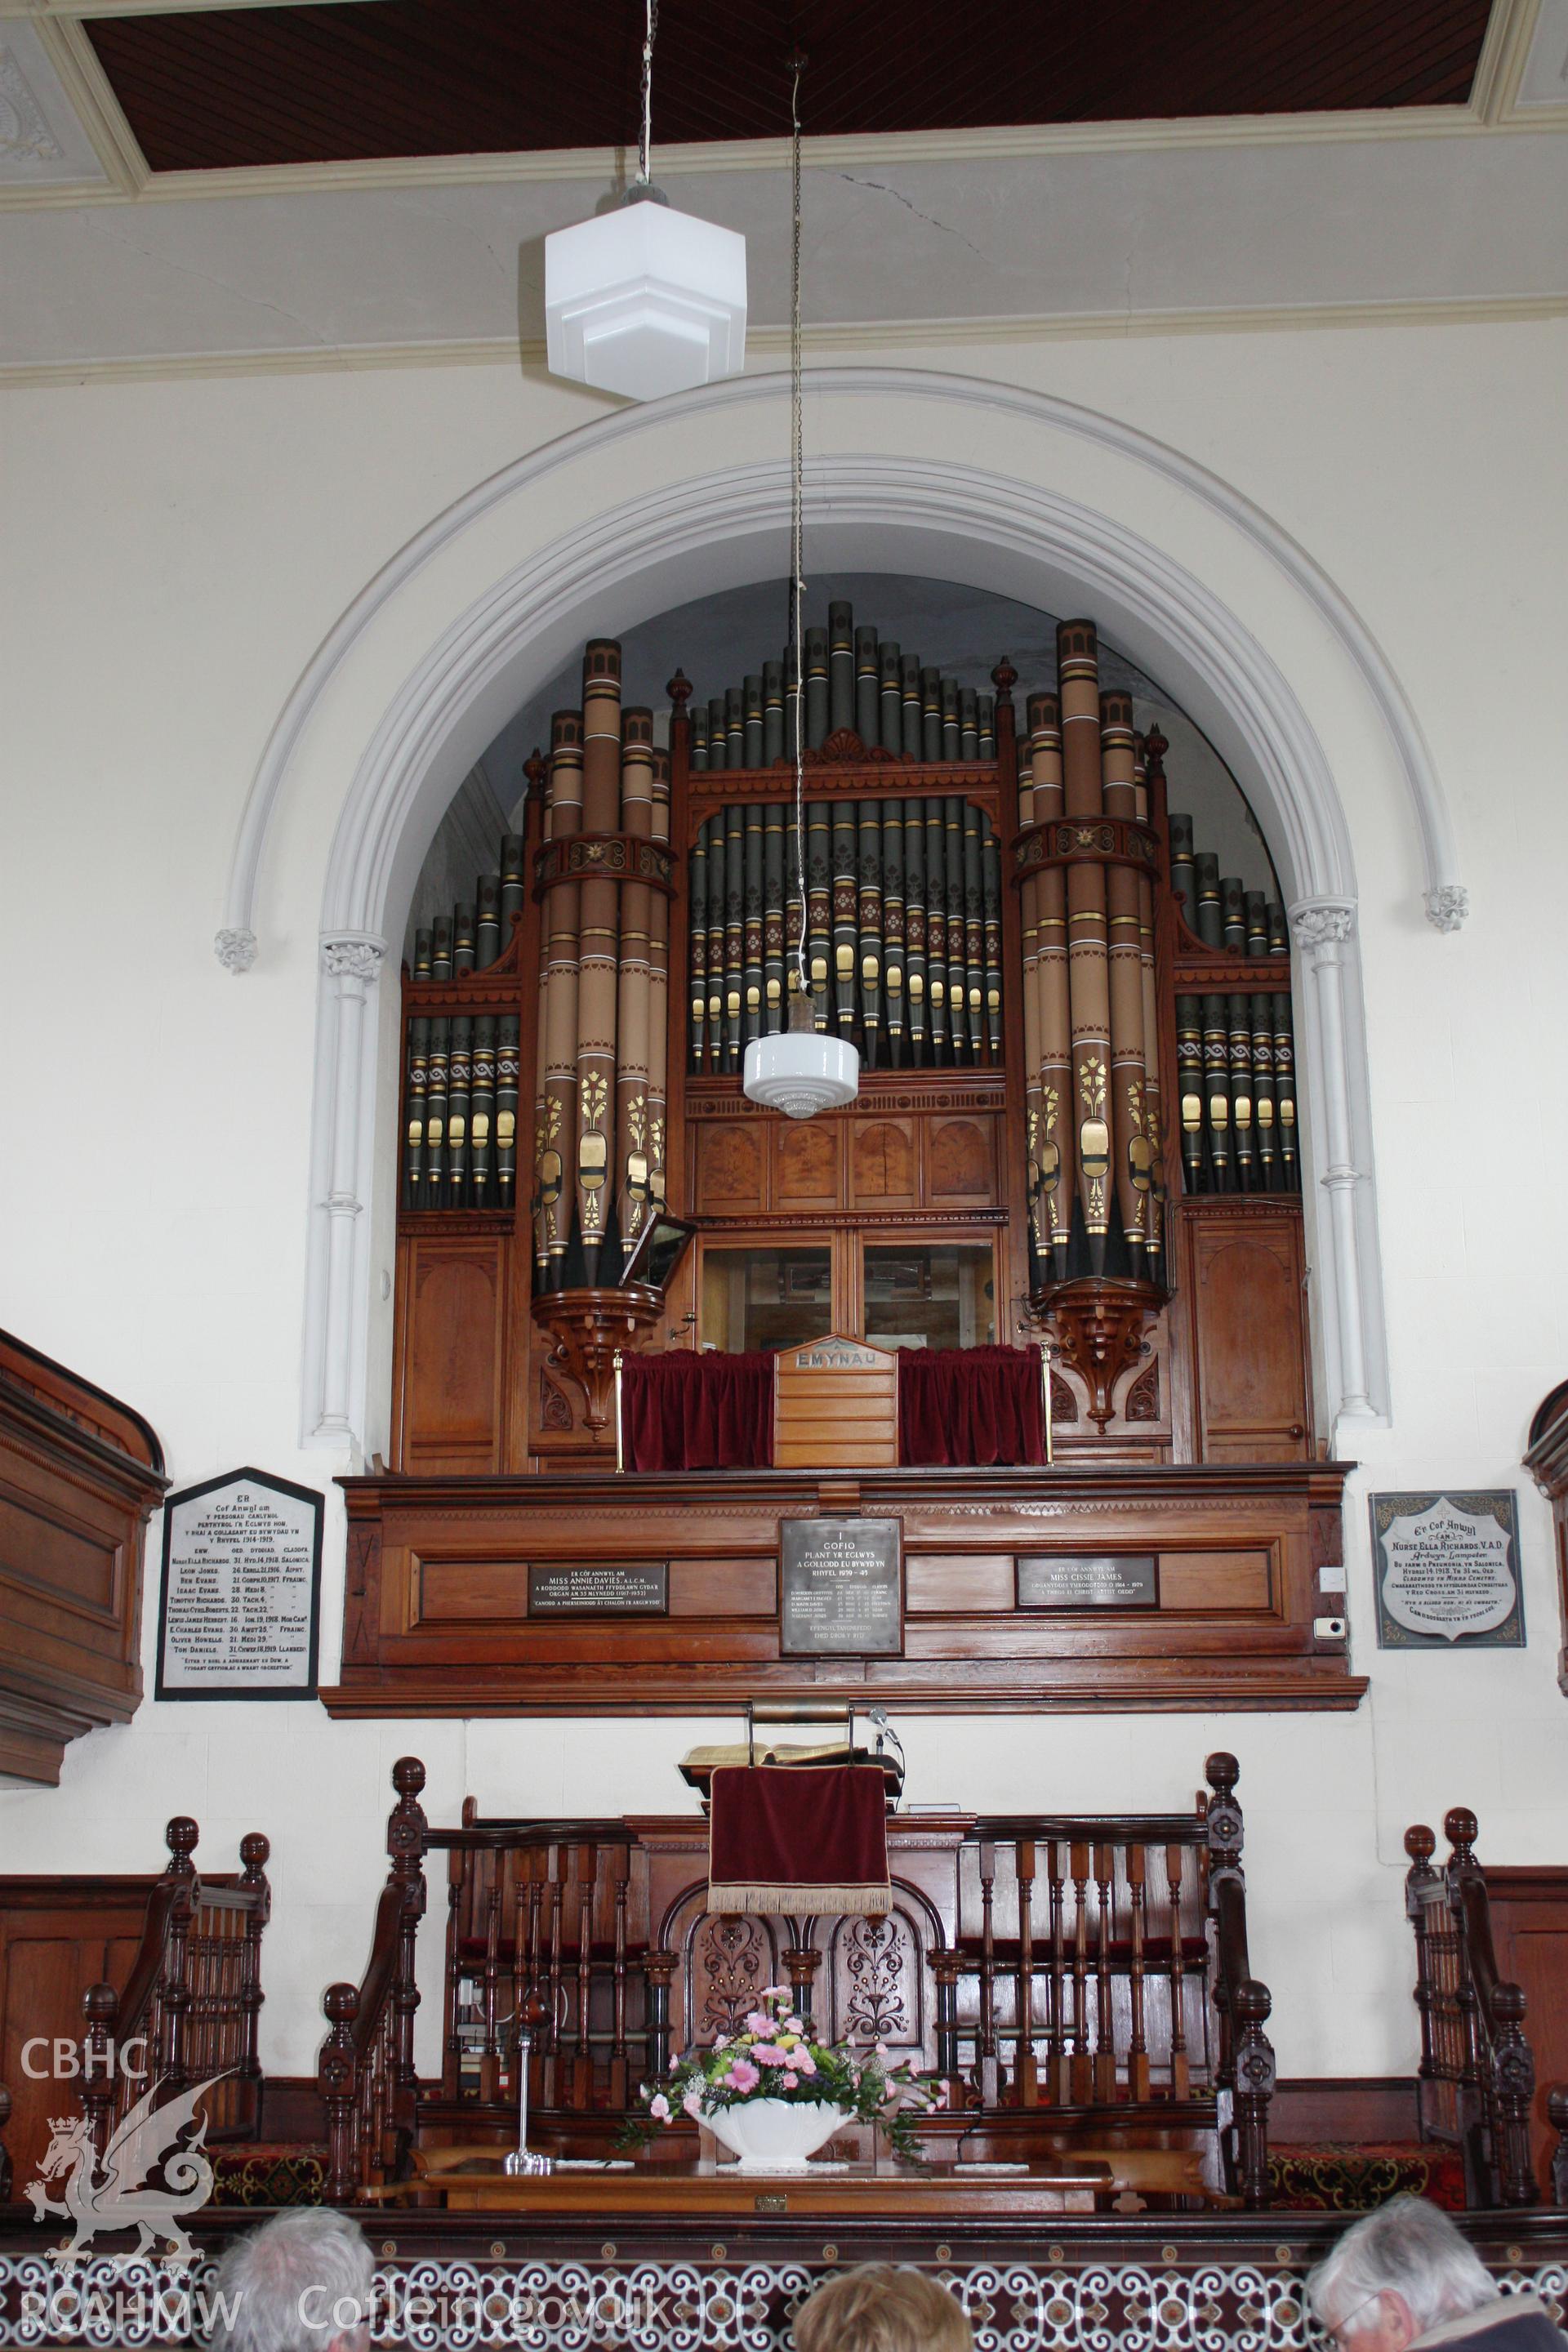 Soar chapel, pulpit platform and organ .